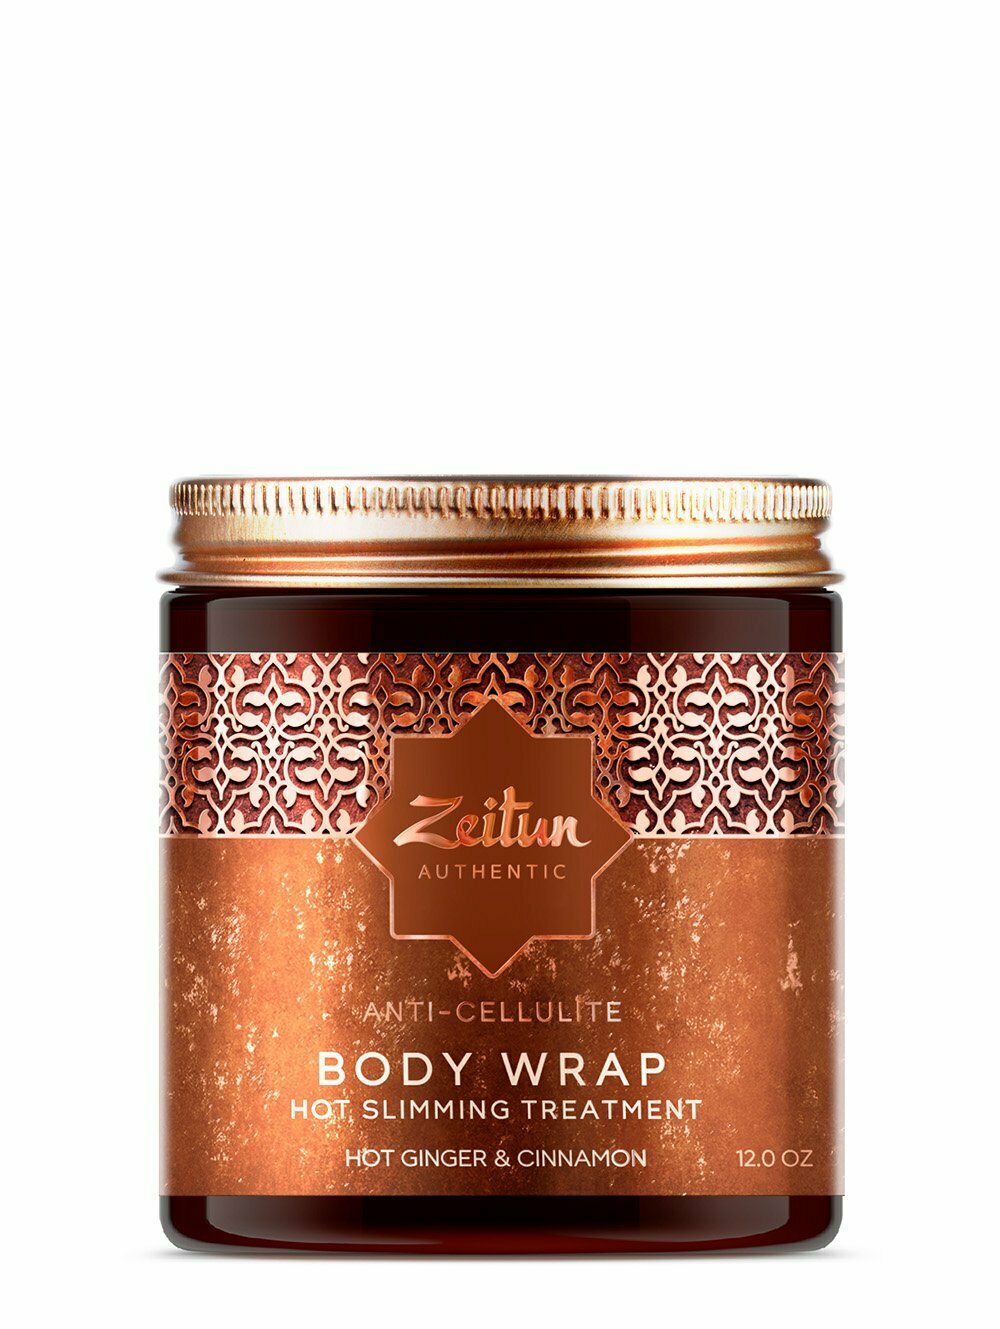 Zeitun Authentic Anti-Cellulite Body Wrap Маска для тела горячая антицеллюлитная с глиной Байлун и имбирем